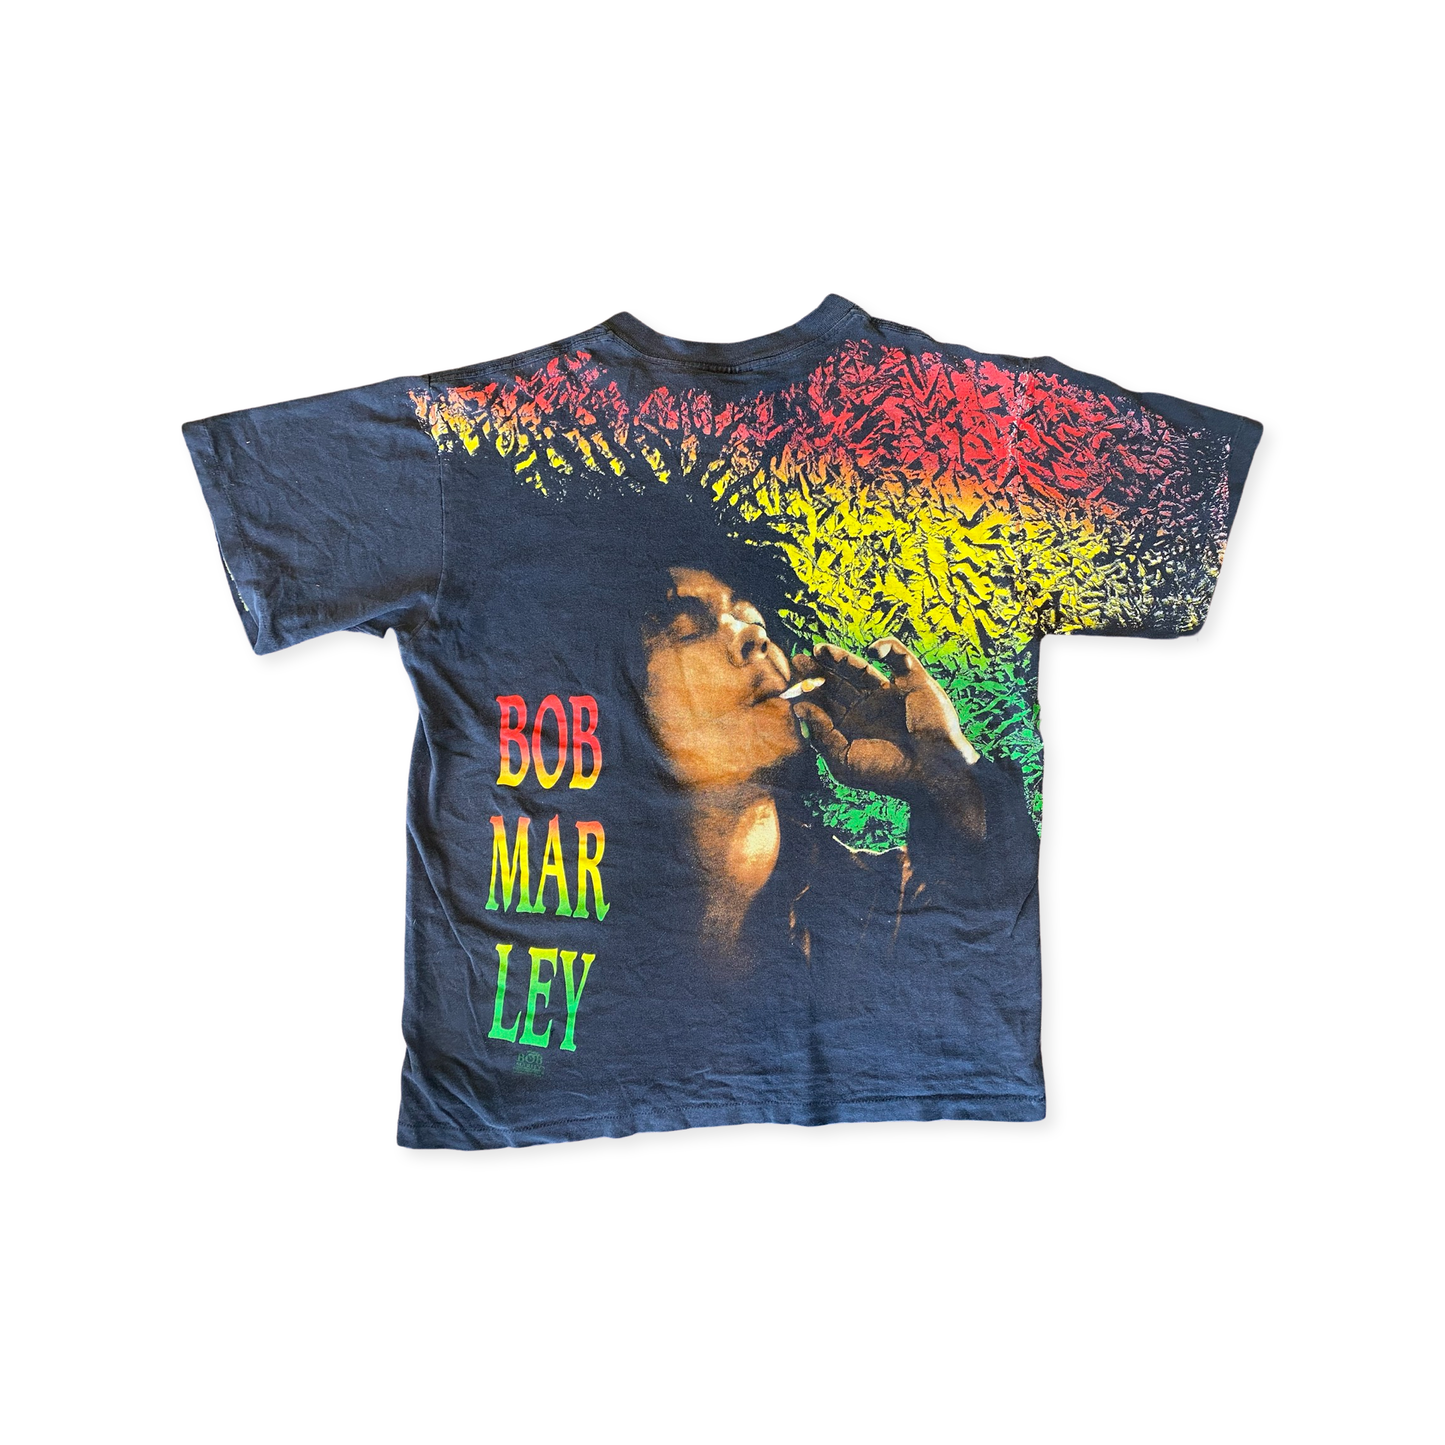 Vintage Rainbow Bob Marley Tee